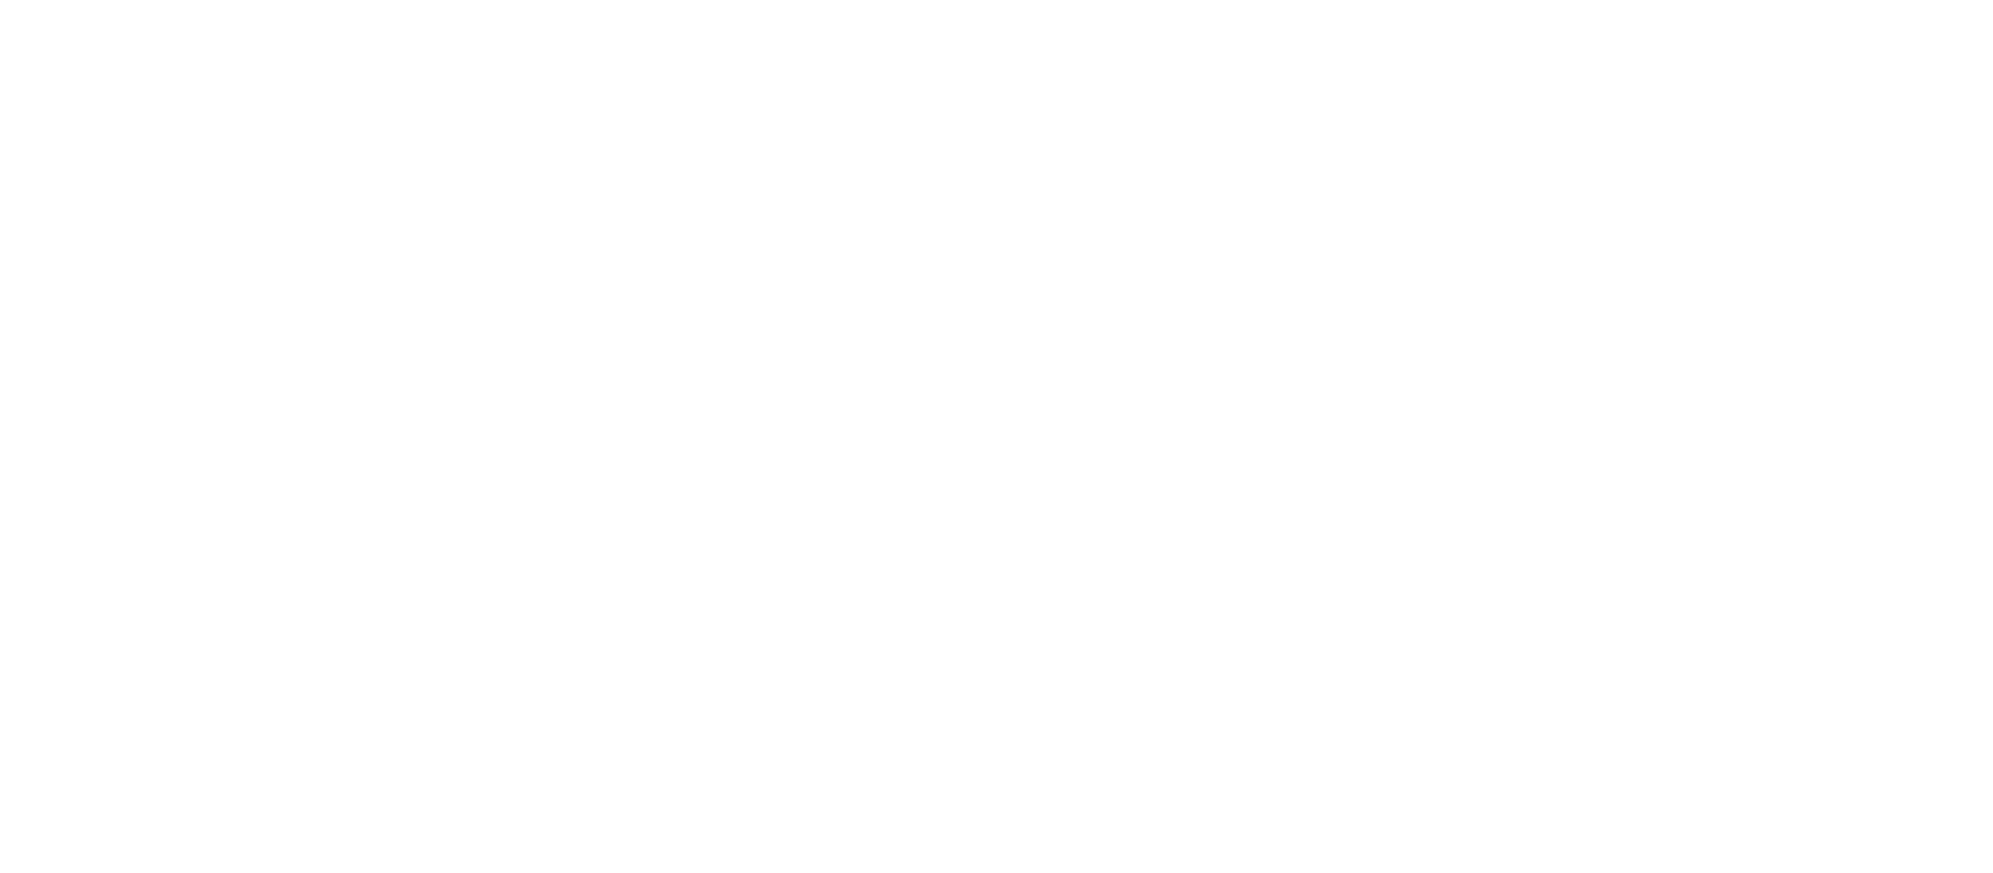 NRLA white logo